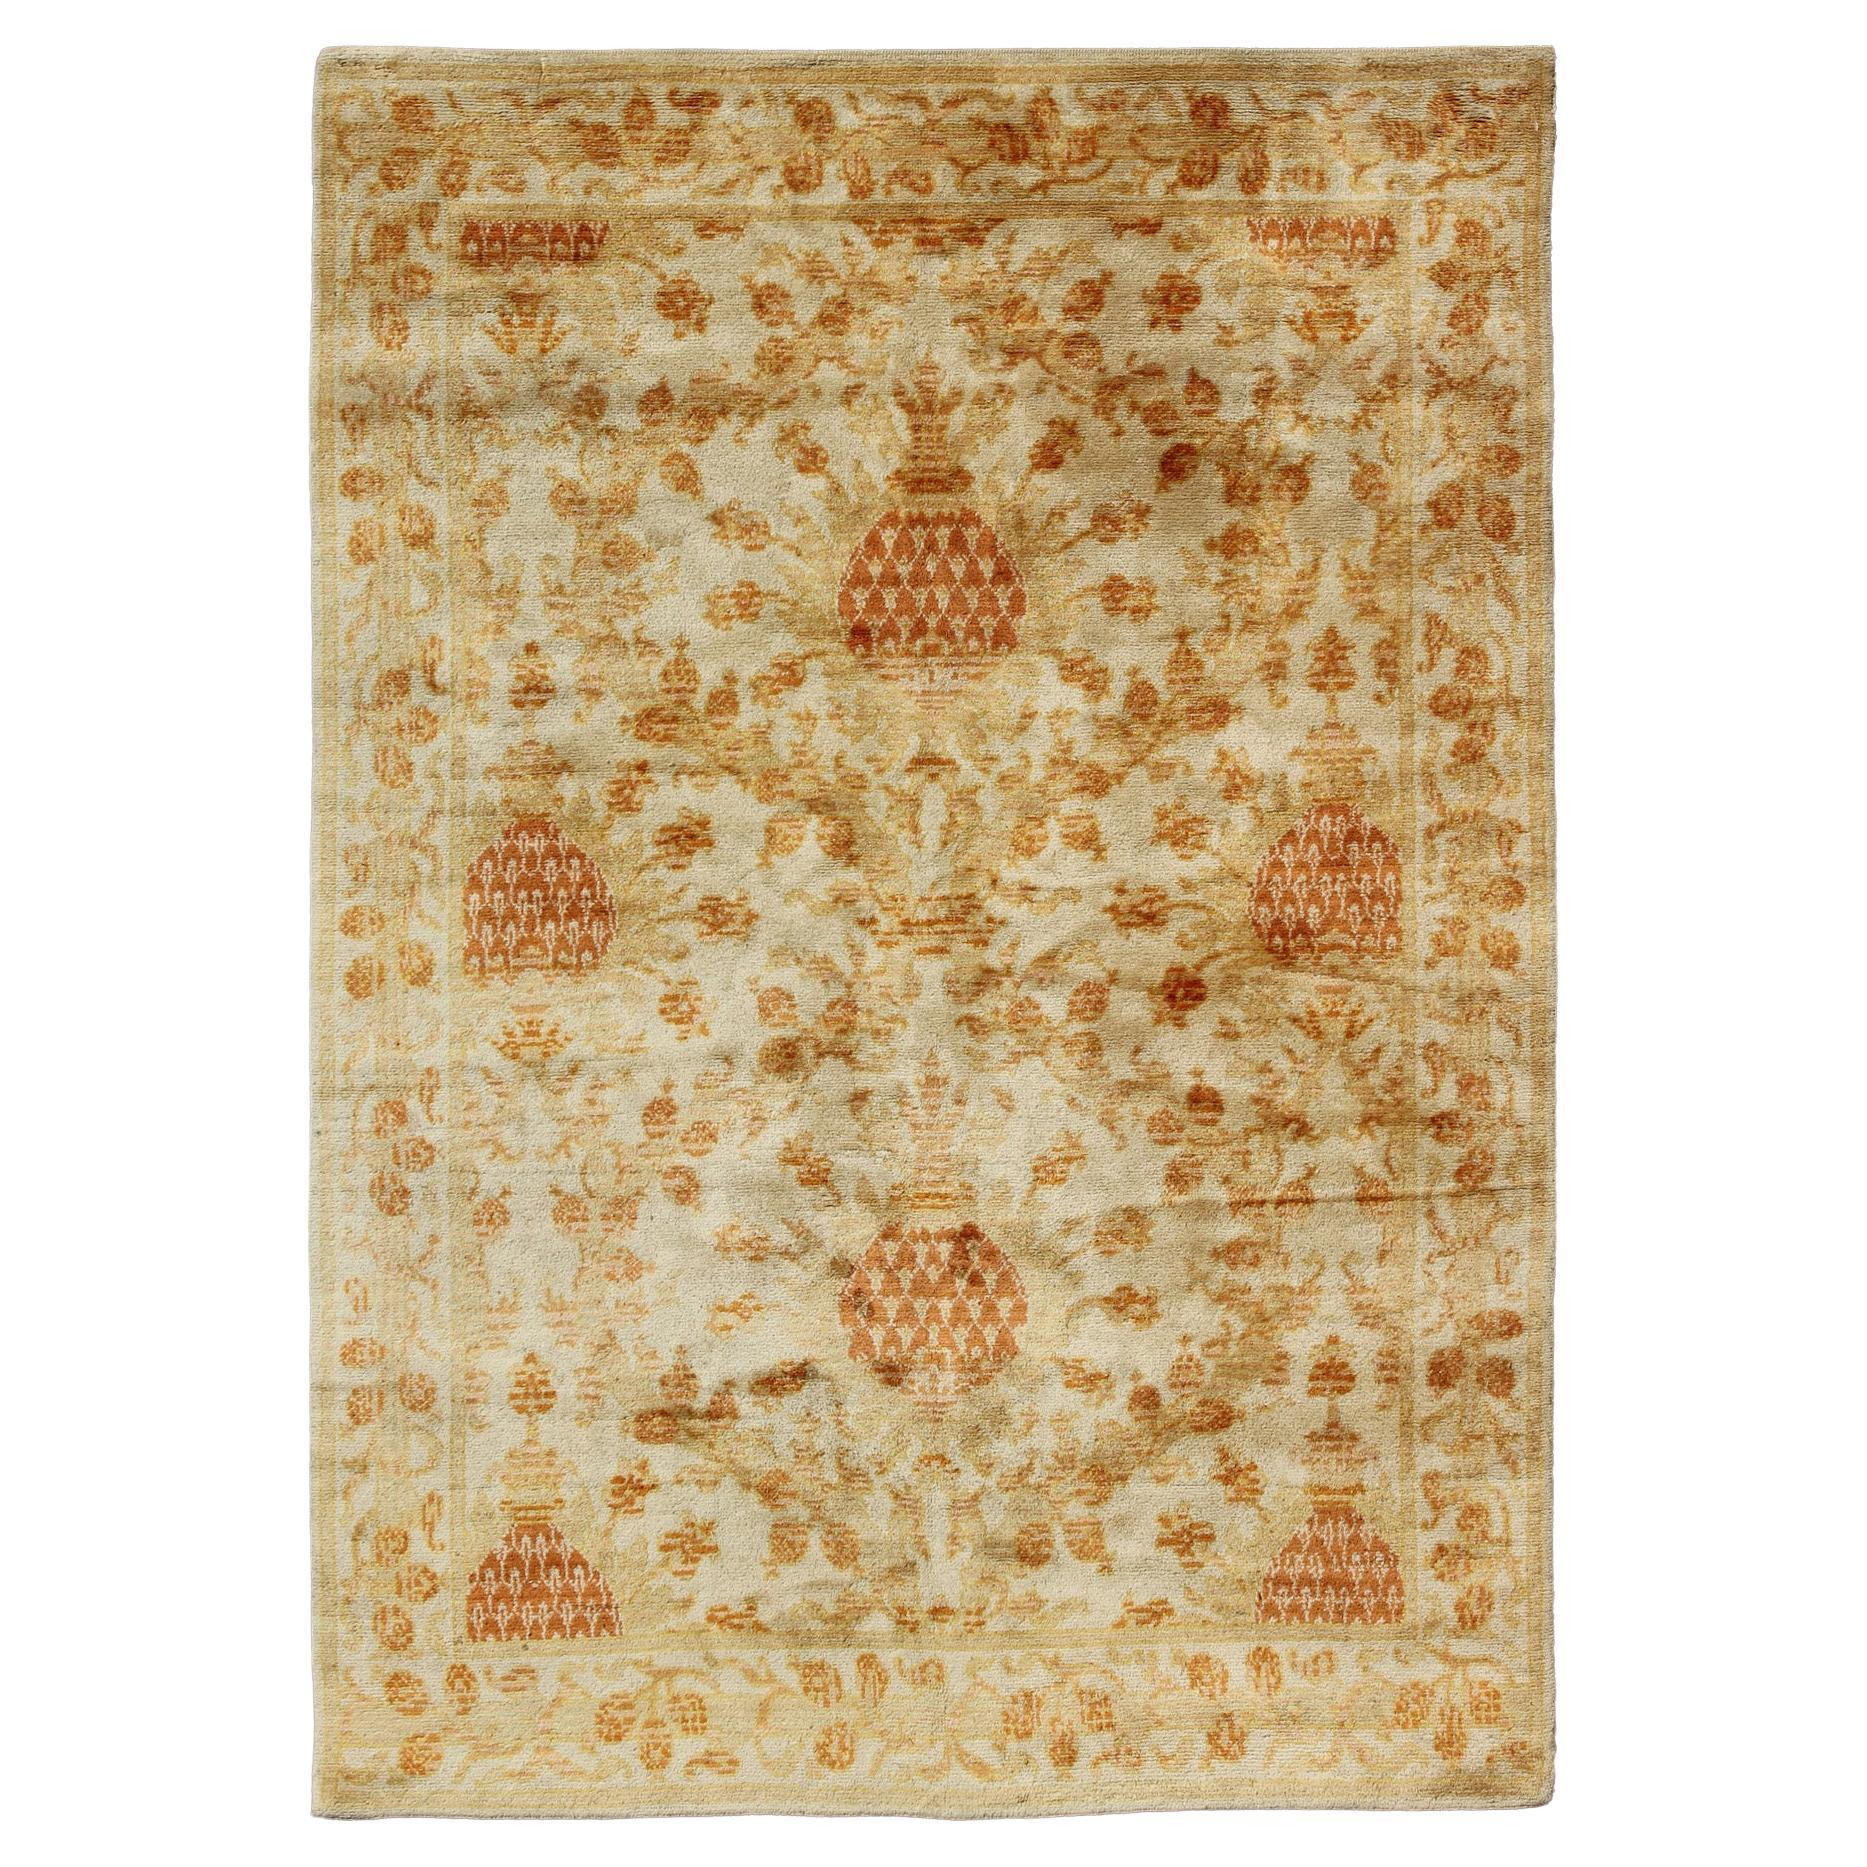 Antique Spanish European Carpet with Pineapple Design in Gold, Cream & Tangerine